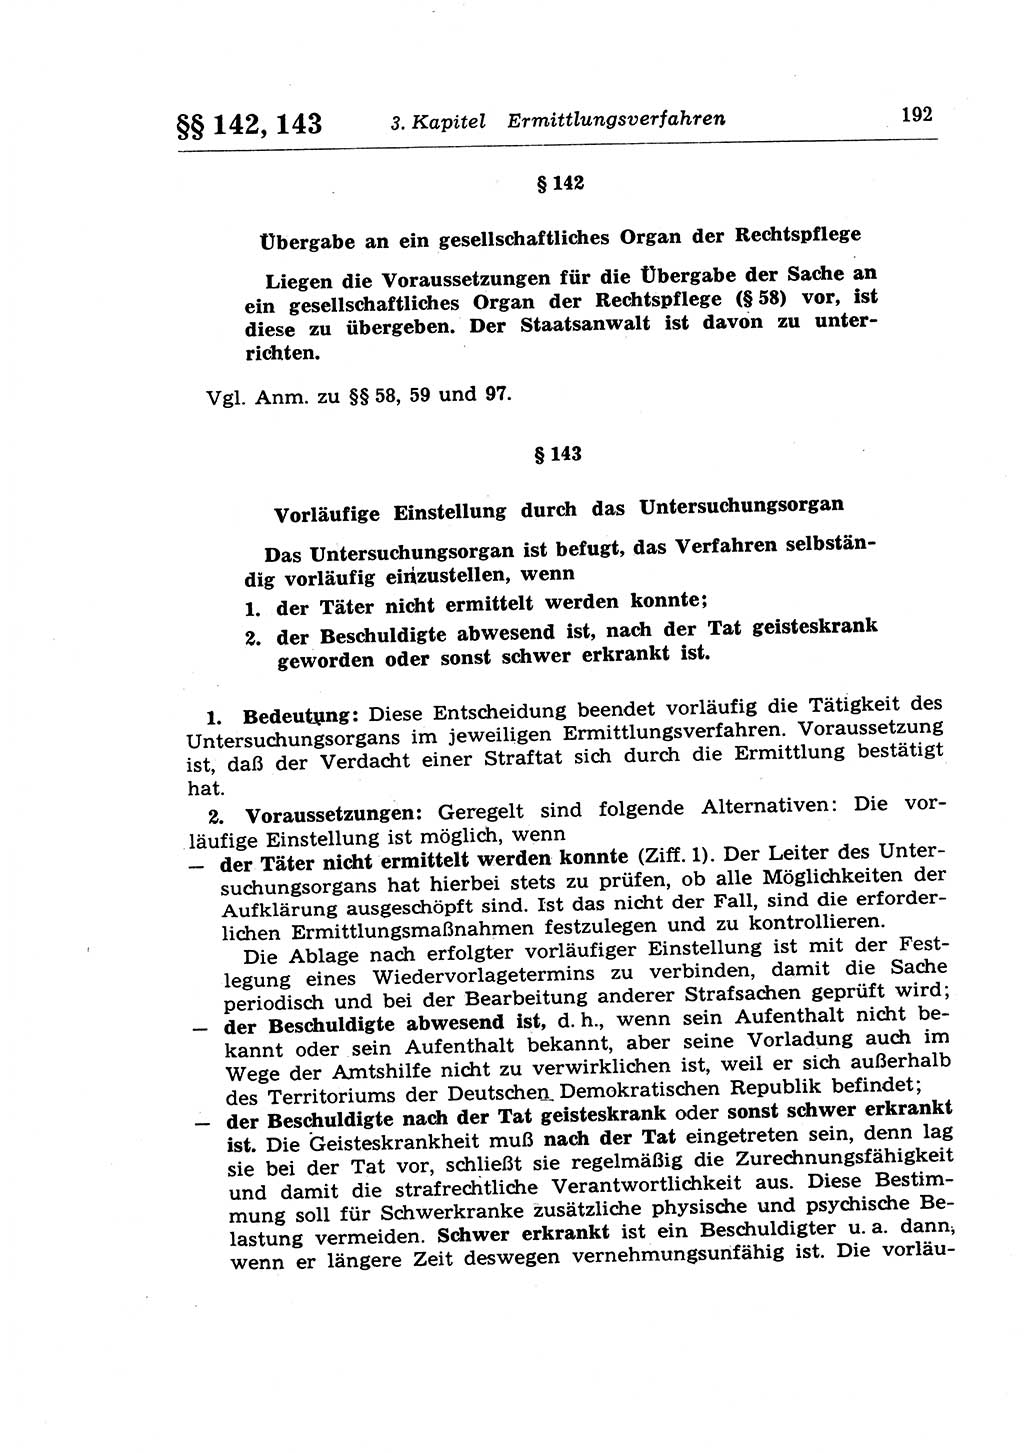 Strafprozeßrecht der DDR (Deutsche Demokratische Republik), Lehrkommentar zur Strafprozeßordnung (StPO) 1968, Seite 192 (Strafprozeßr. DDR Lehrkomm. StPO 19688, S. 192)